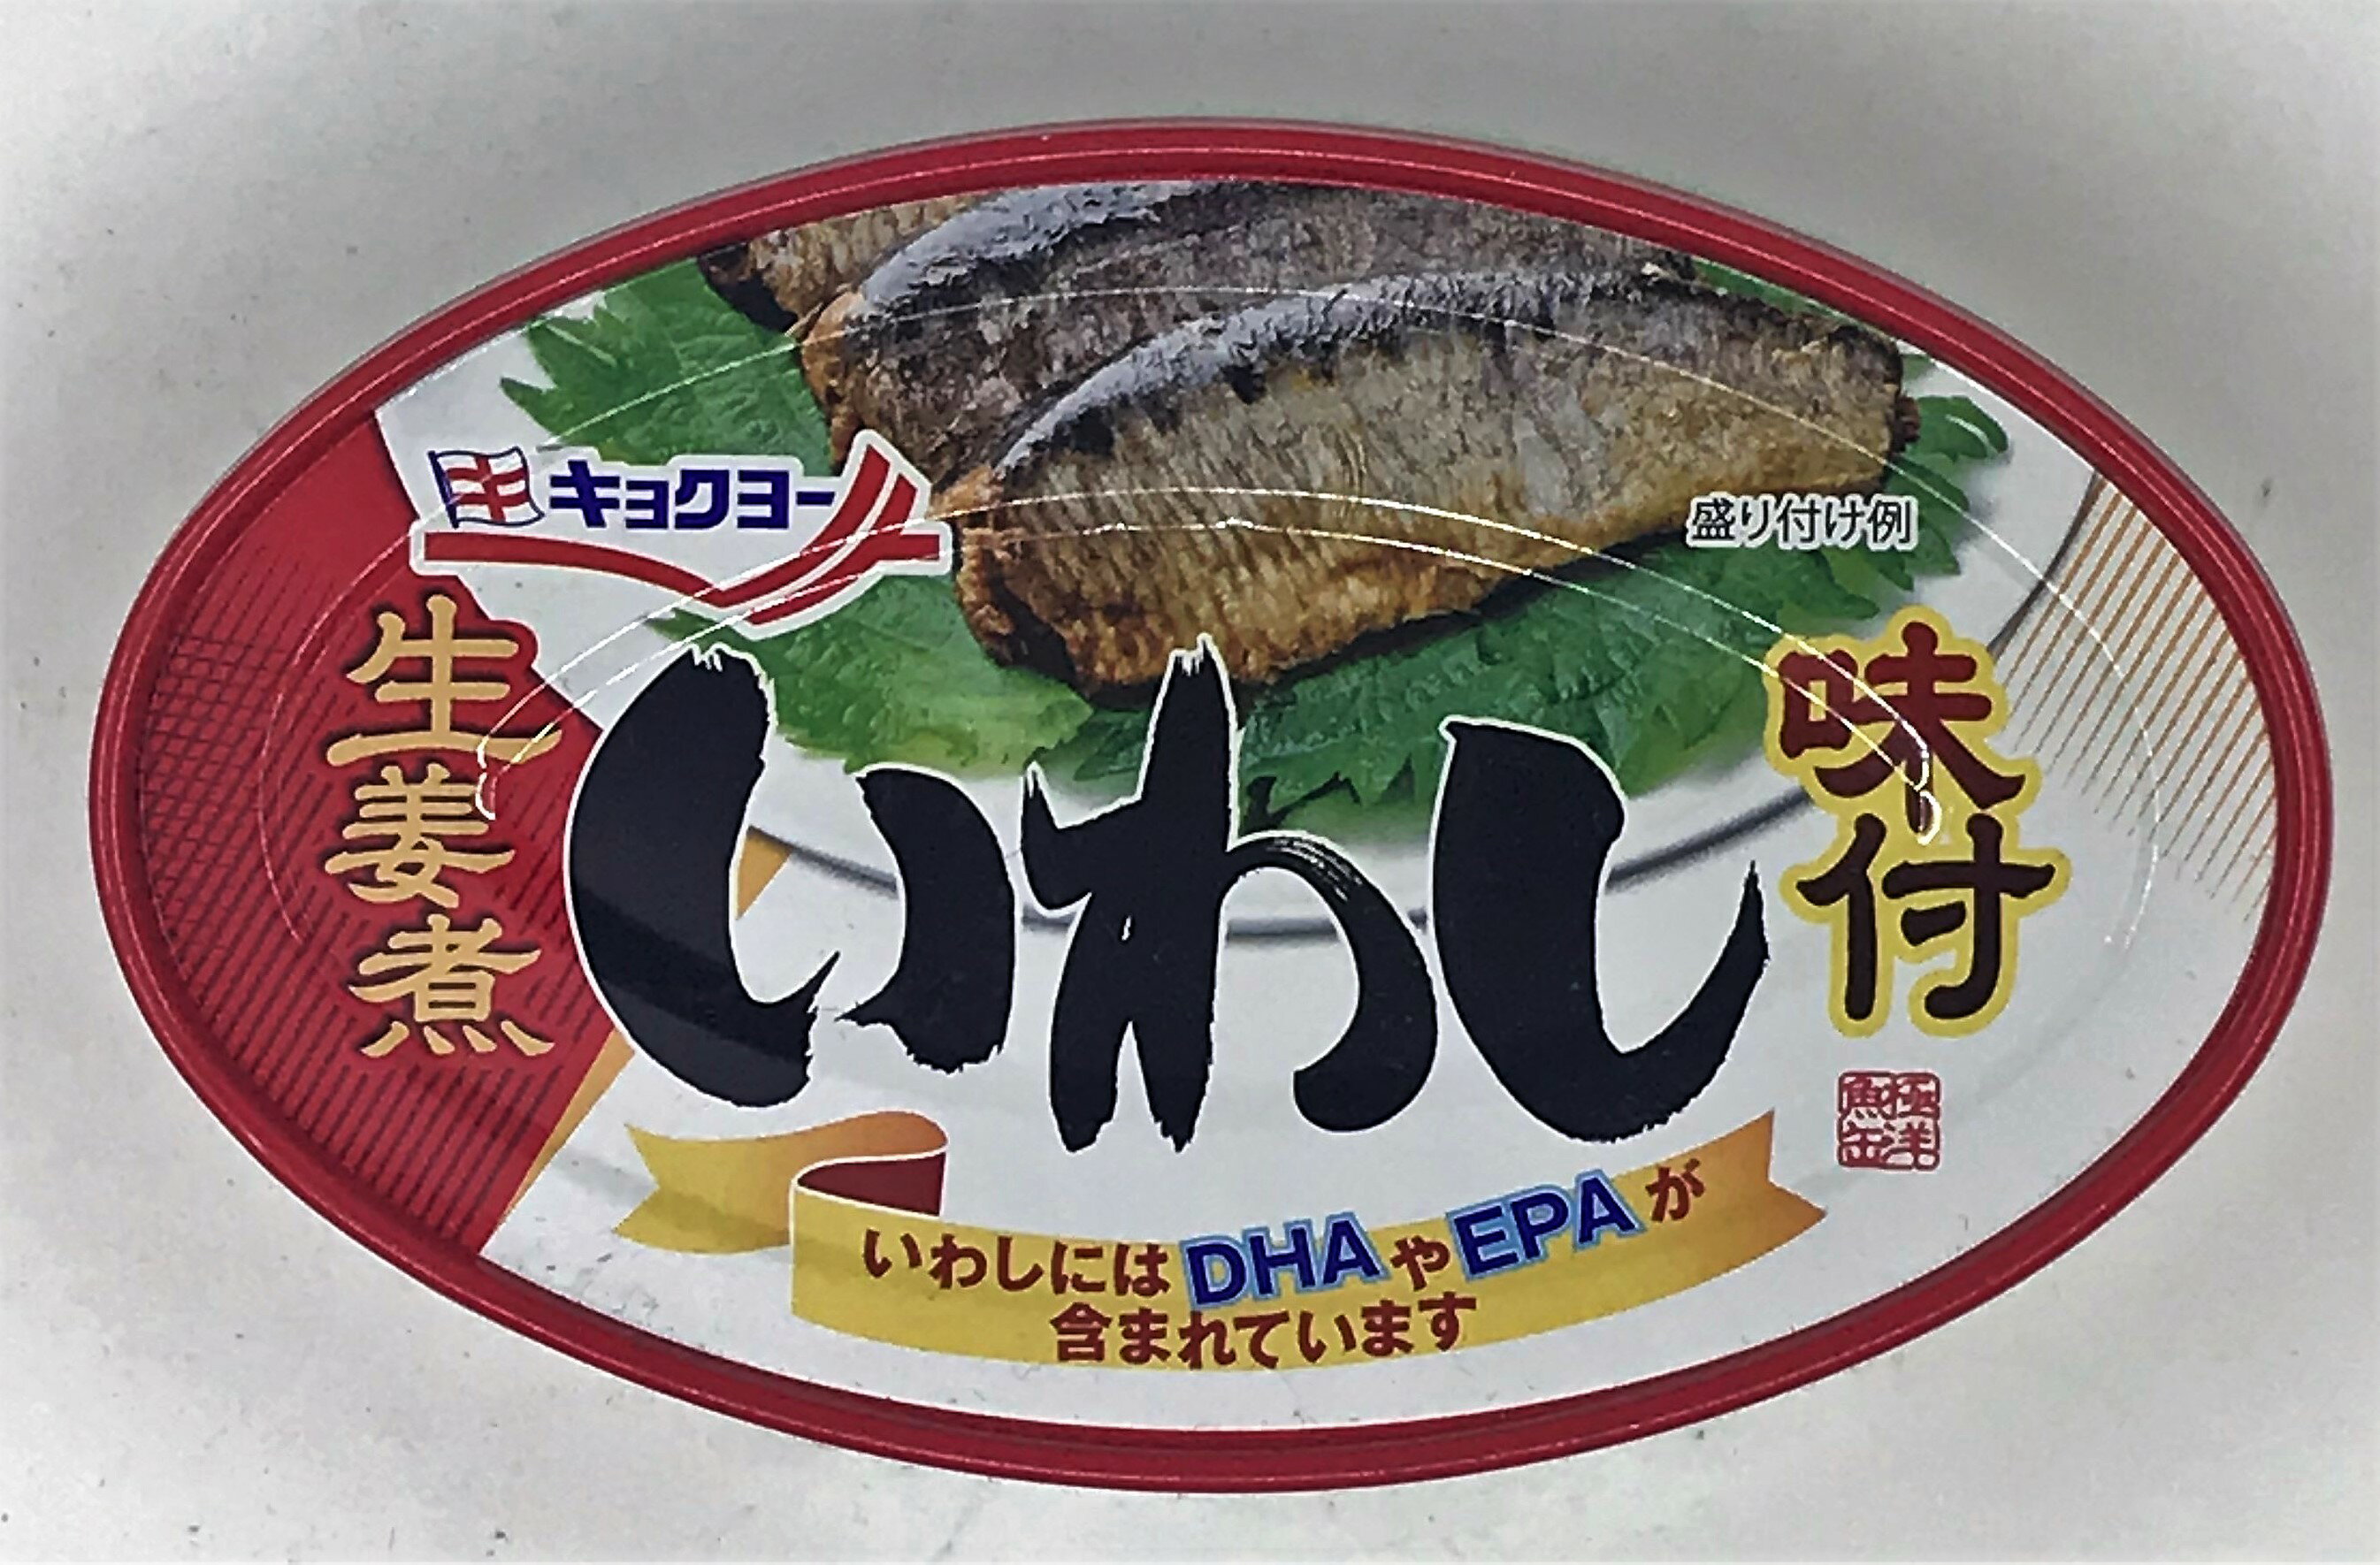 [哈日小丸子]極洋味付沙丁魚罐-生薑(100g)